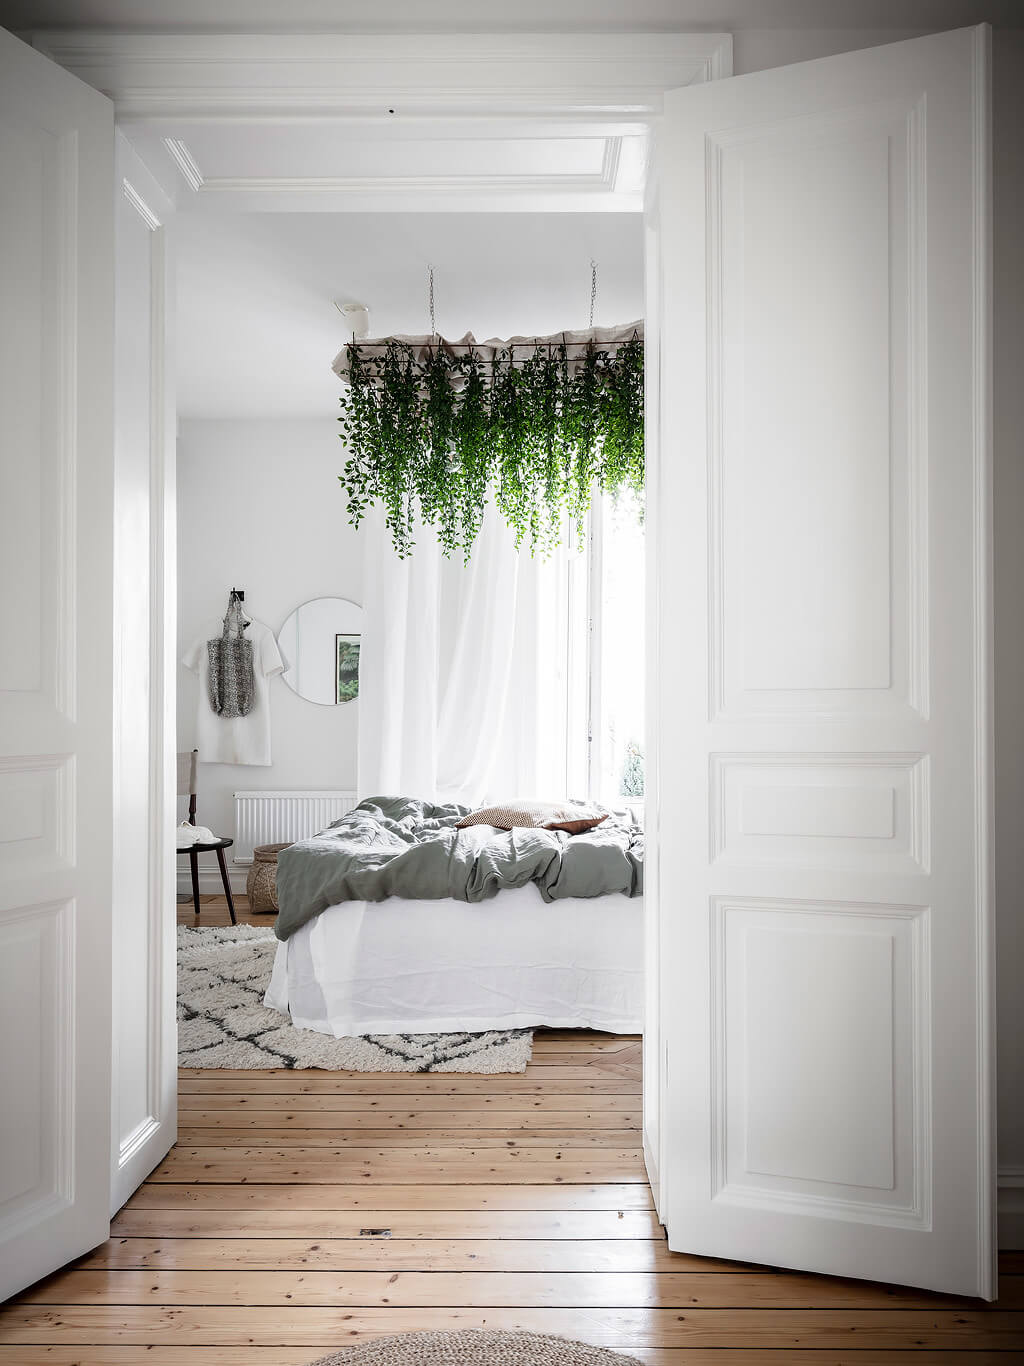 scandinavian apartment canopy plants nordroom11 A Scandi Apartment With A Canopy of Plants in the Bedroom